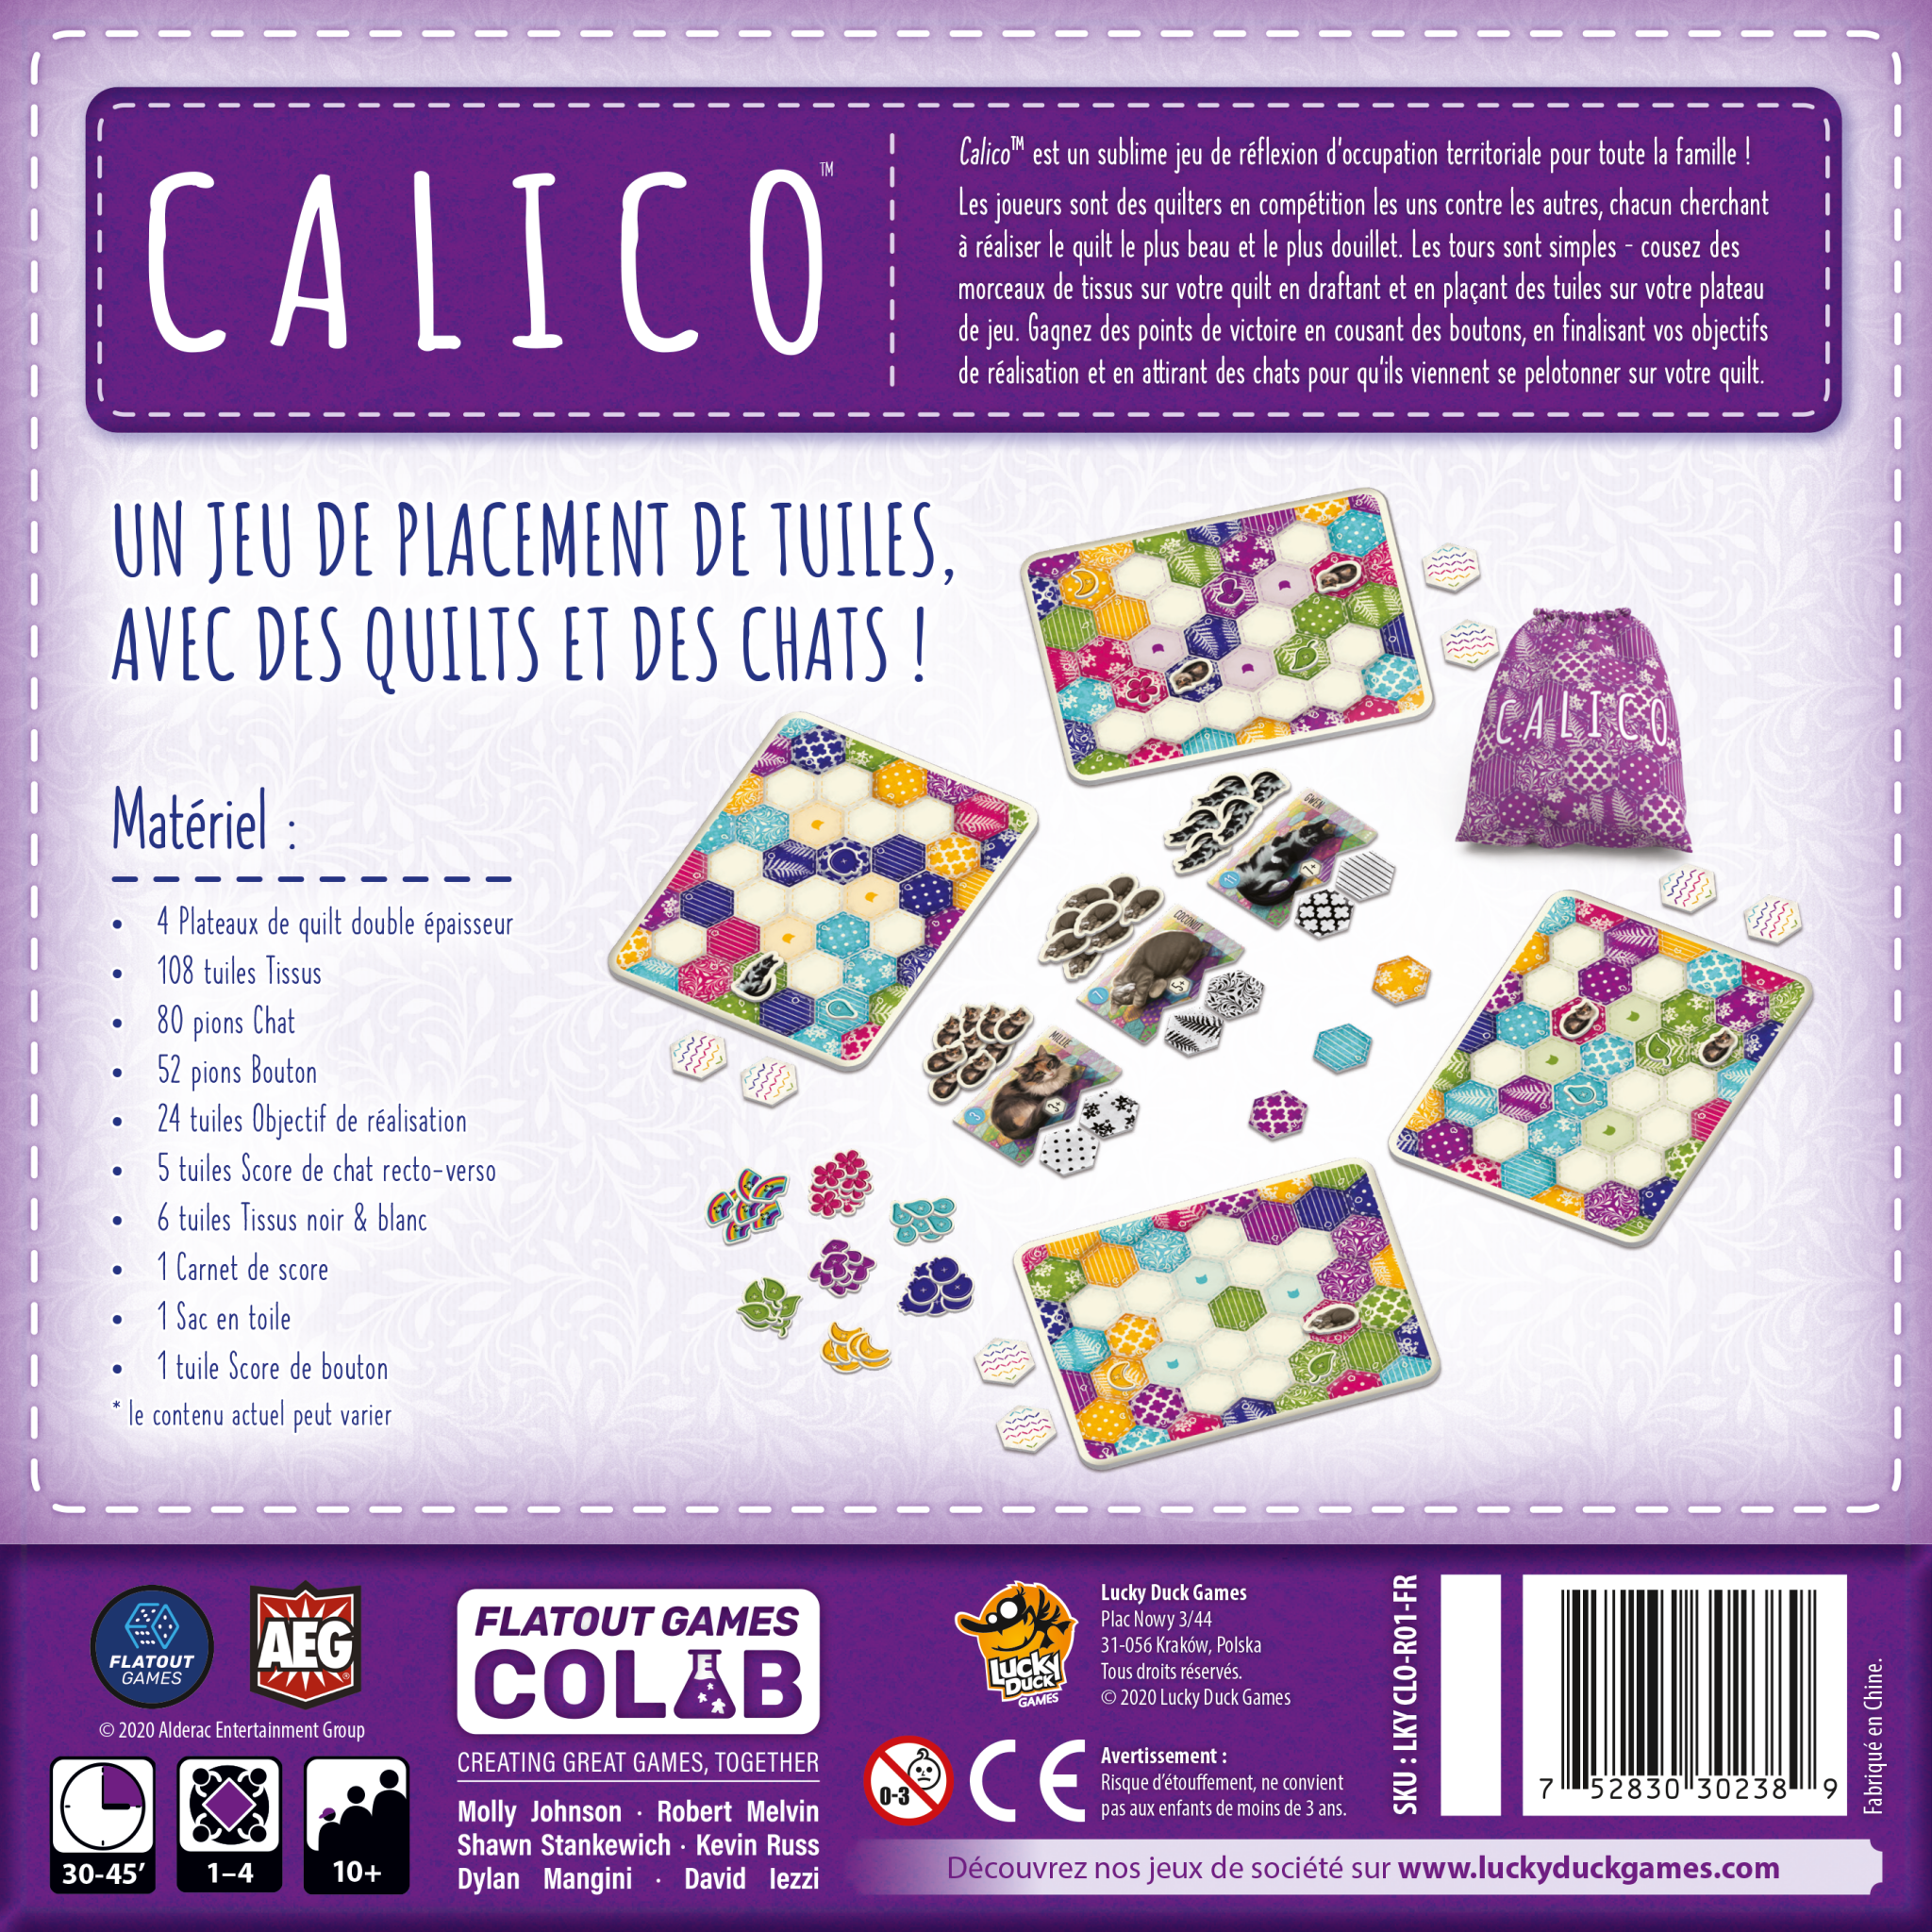 Présentation du jeu Calico